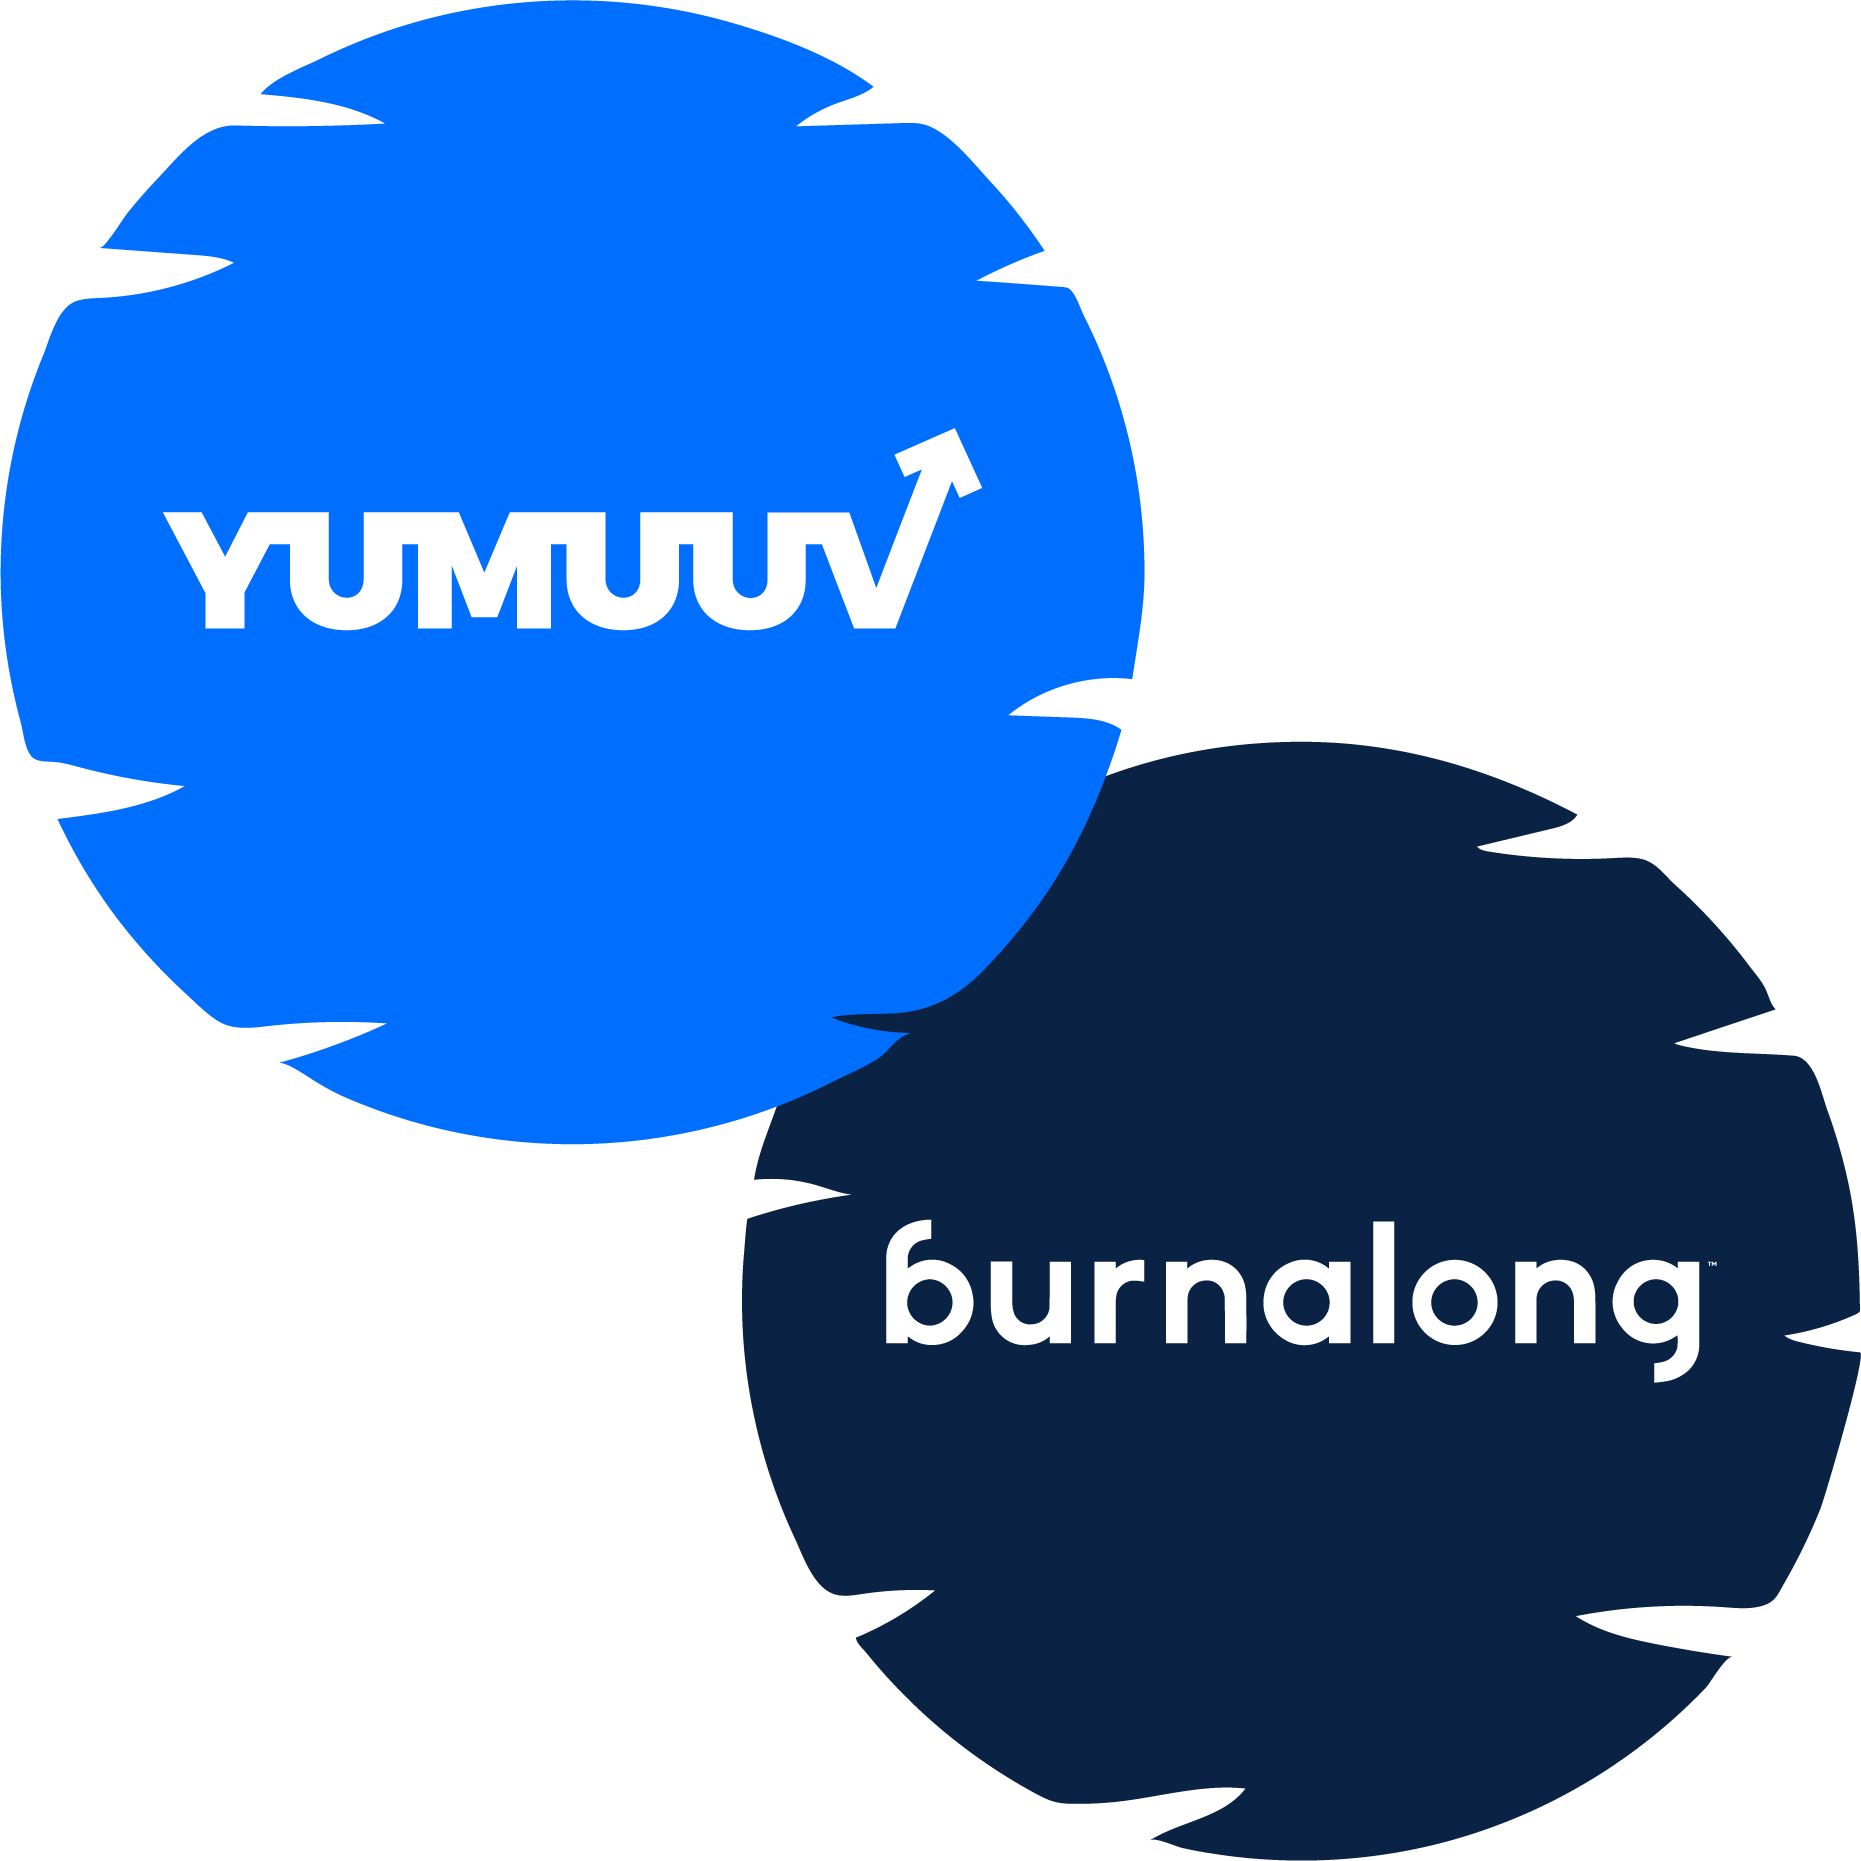 yumuuv-vs-burnalong